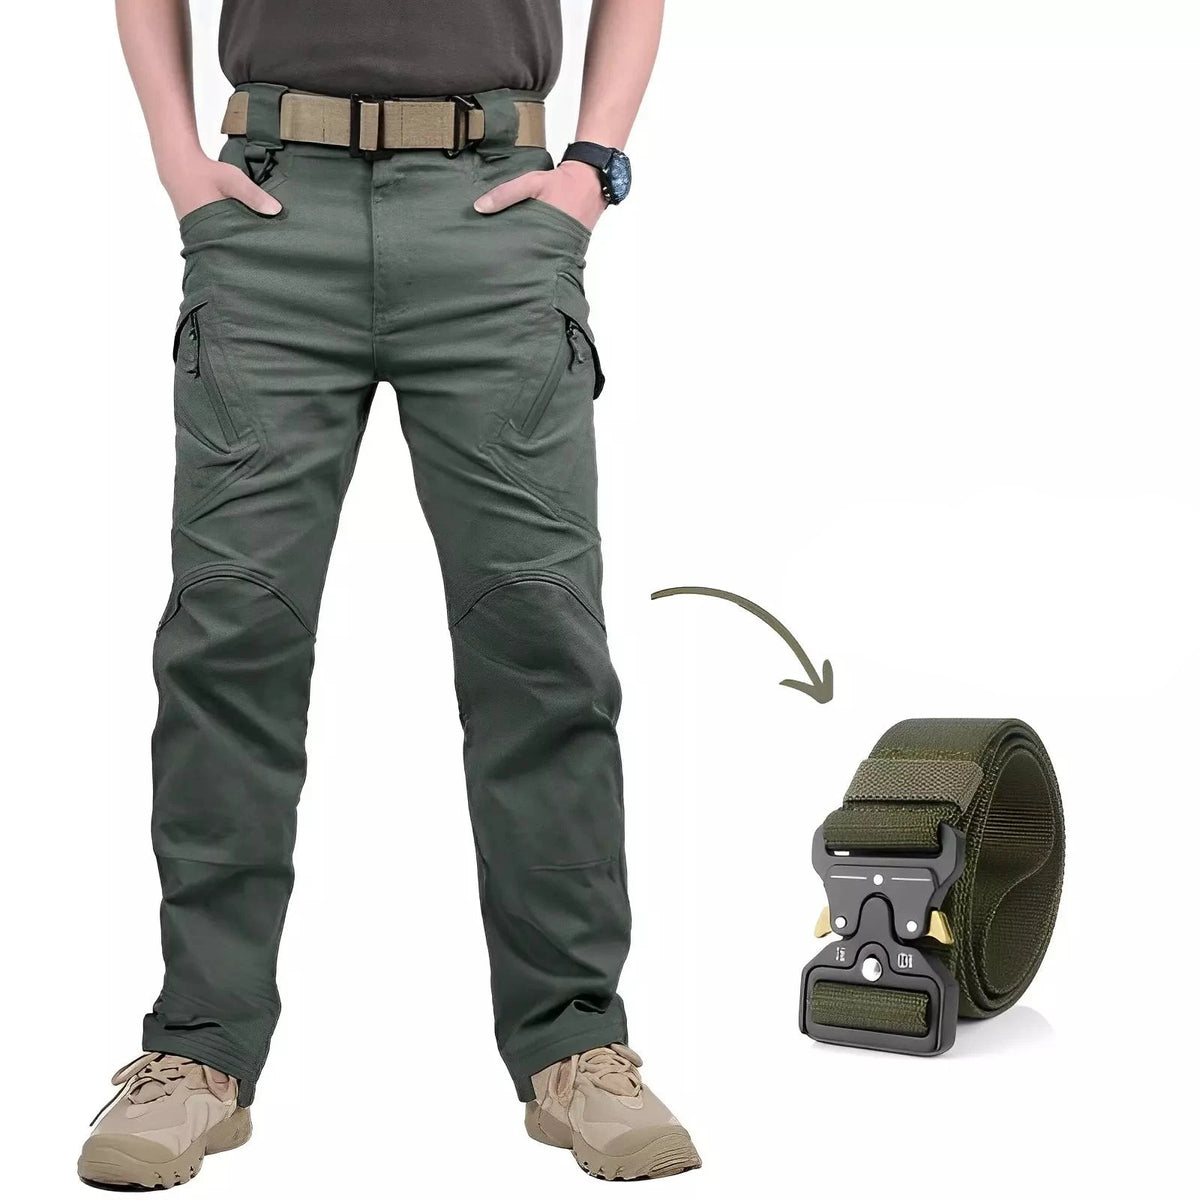 Calça Military Tactical Ultra Resistente e Impermeável + Cinto